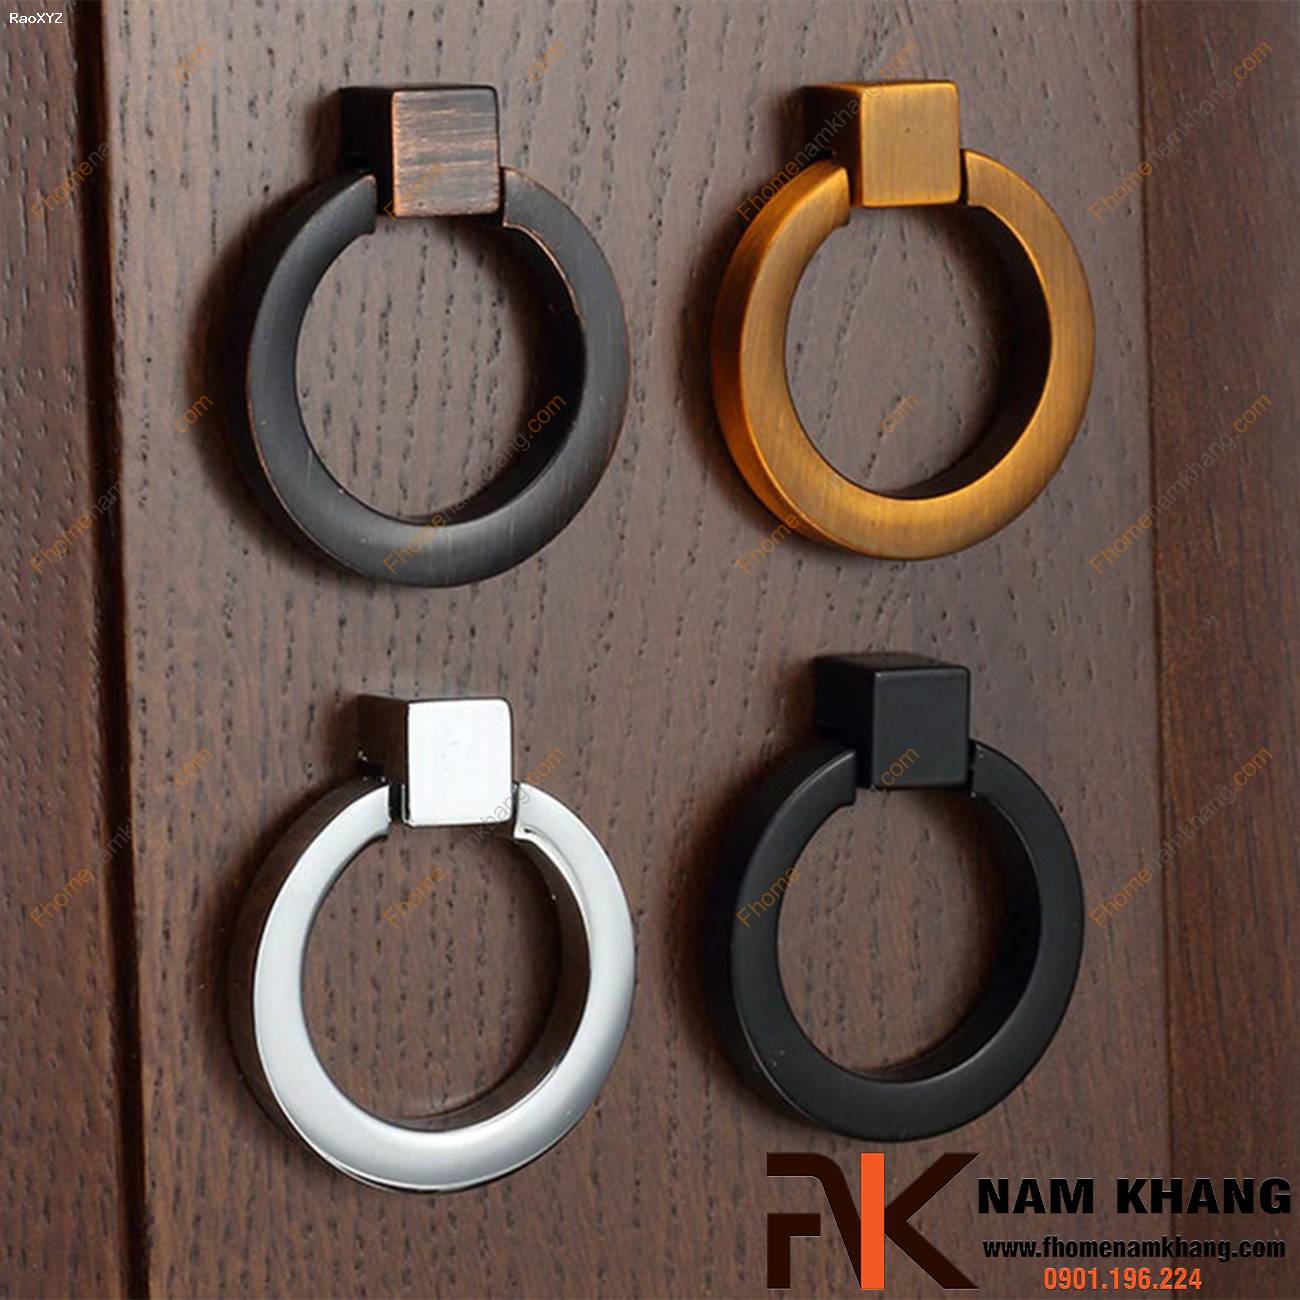 Núm cửa tủ cao cấp dạng vòng NK161 | F-Home NamKhang